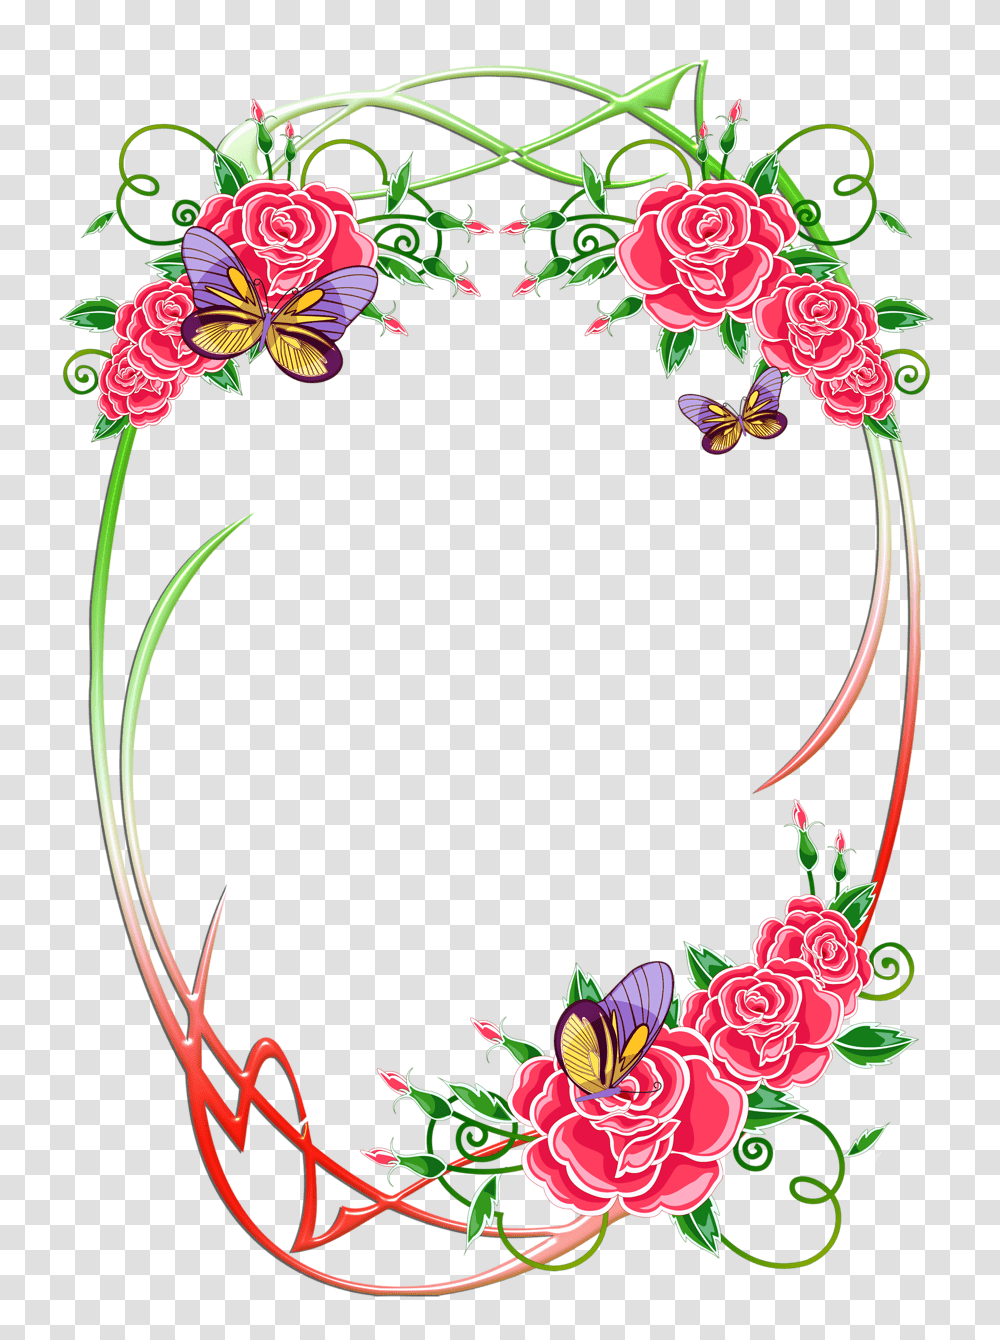 Frames Borders And Frames Floral Wreath, Floral Design, Pattern Transparent Png